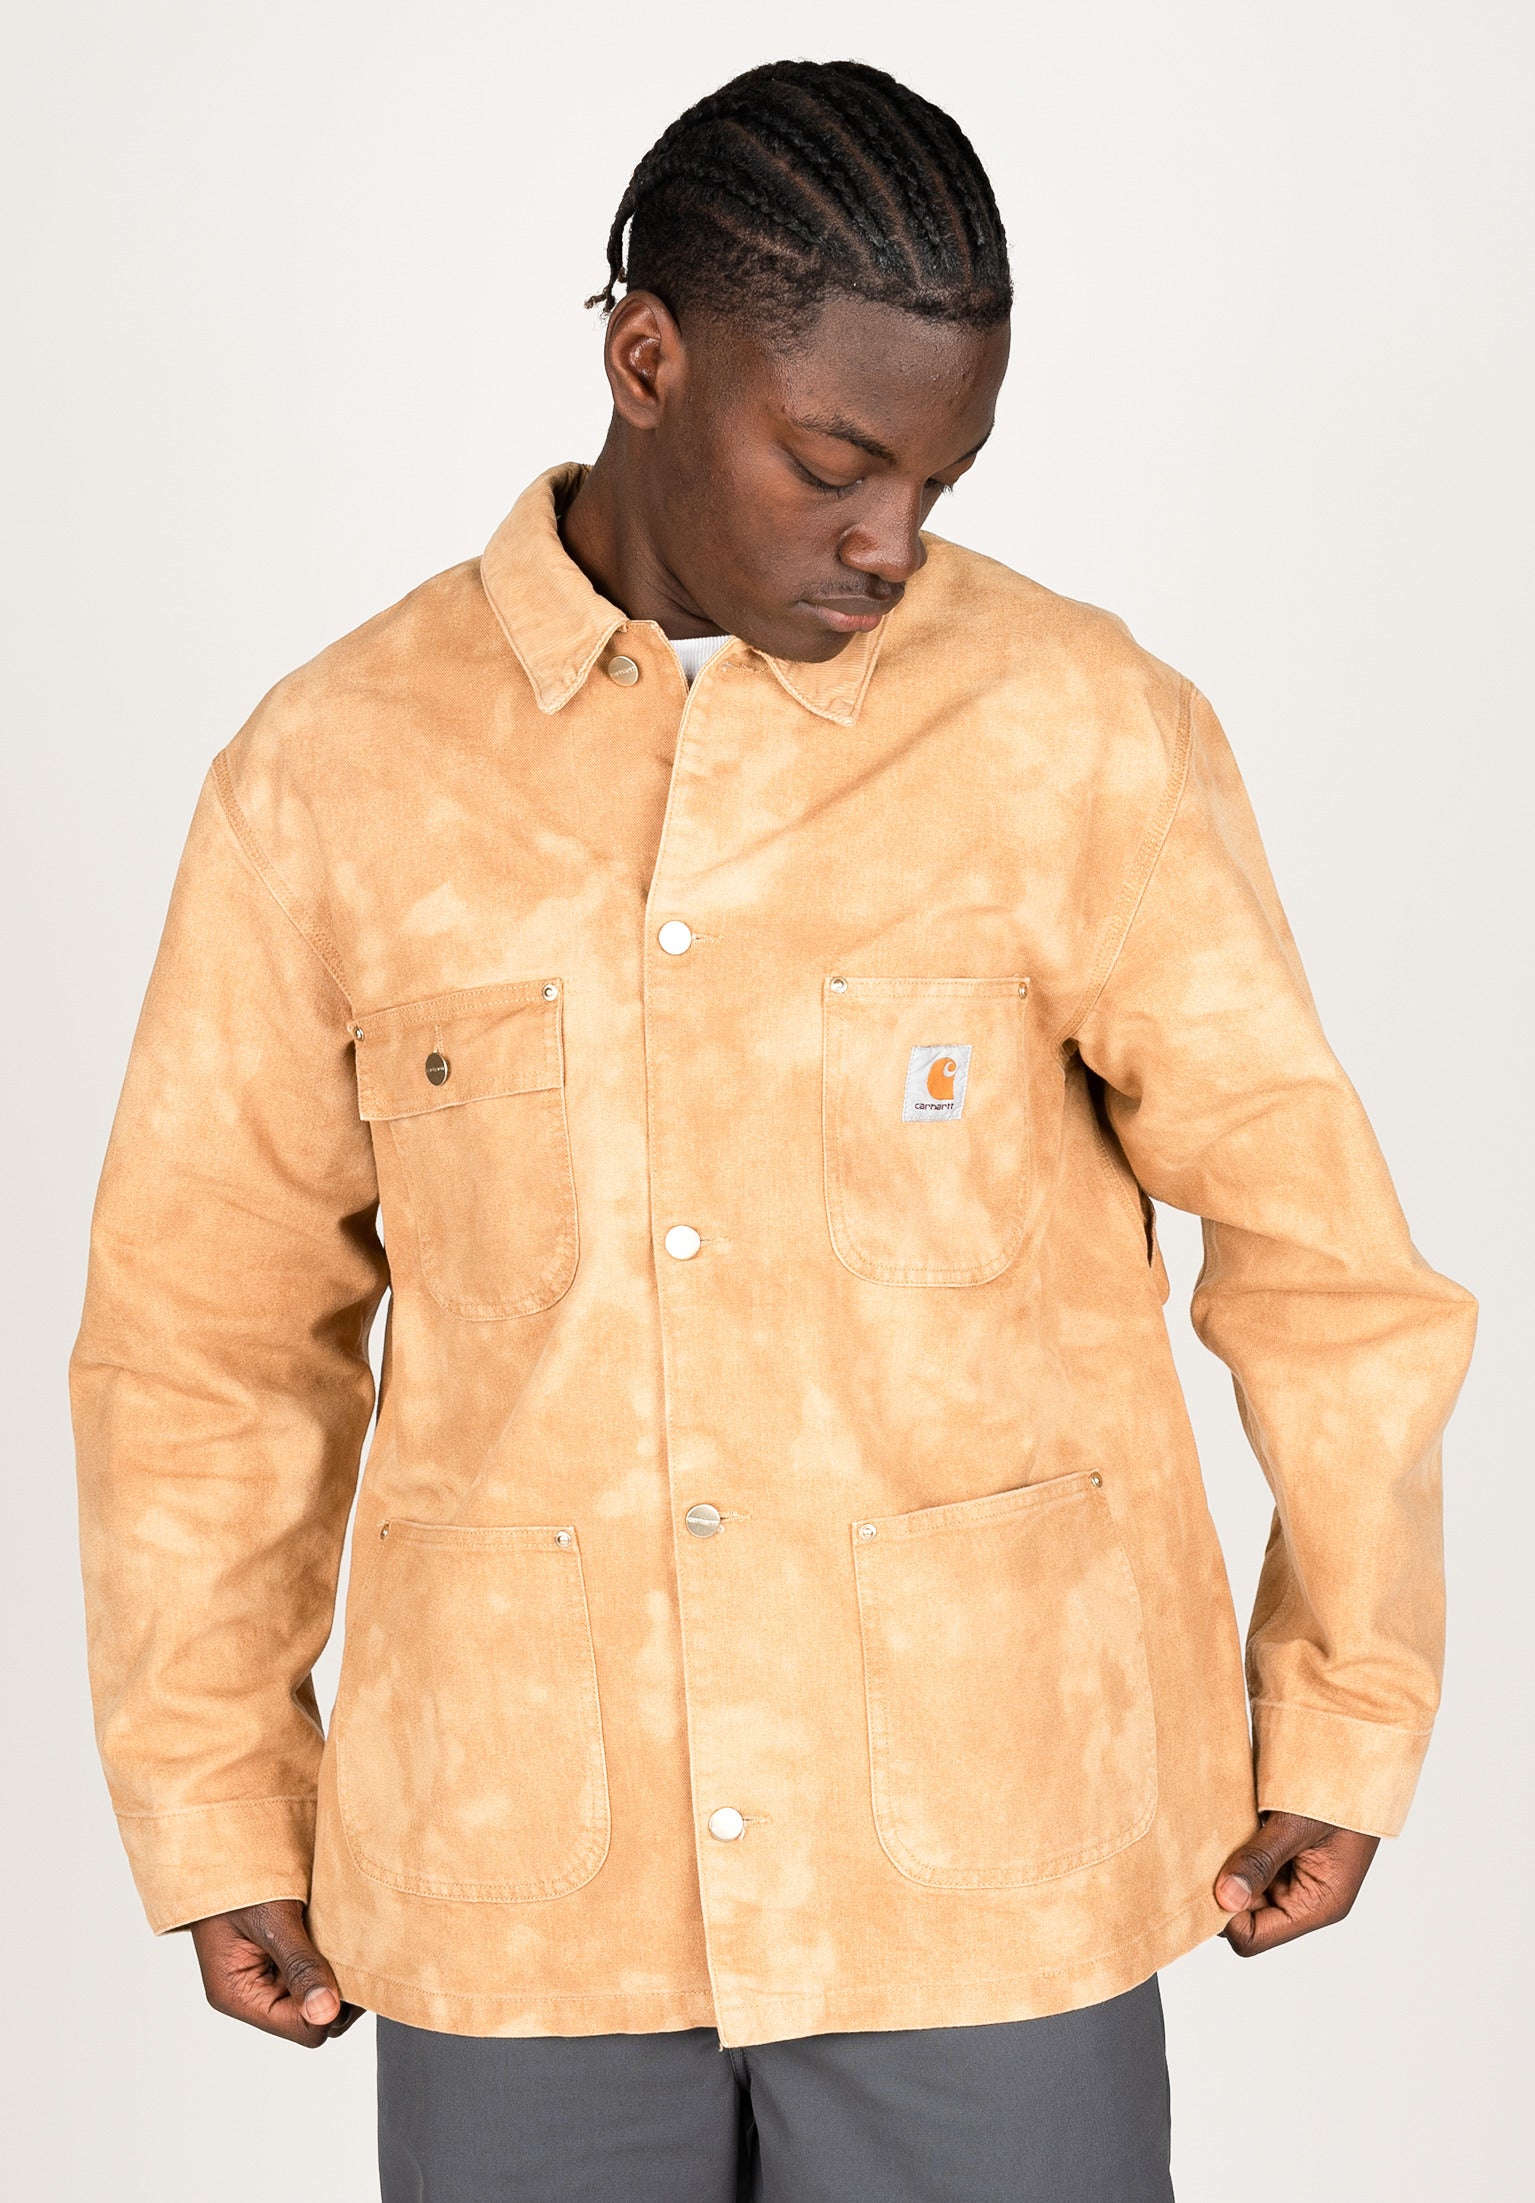 OG Chore Chromo Coat Carhartt WIP Light Jacket in